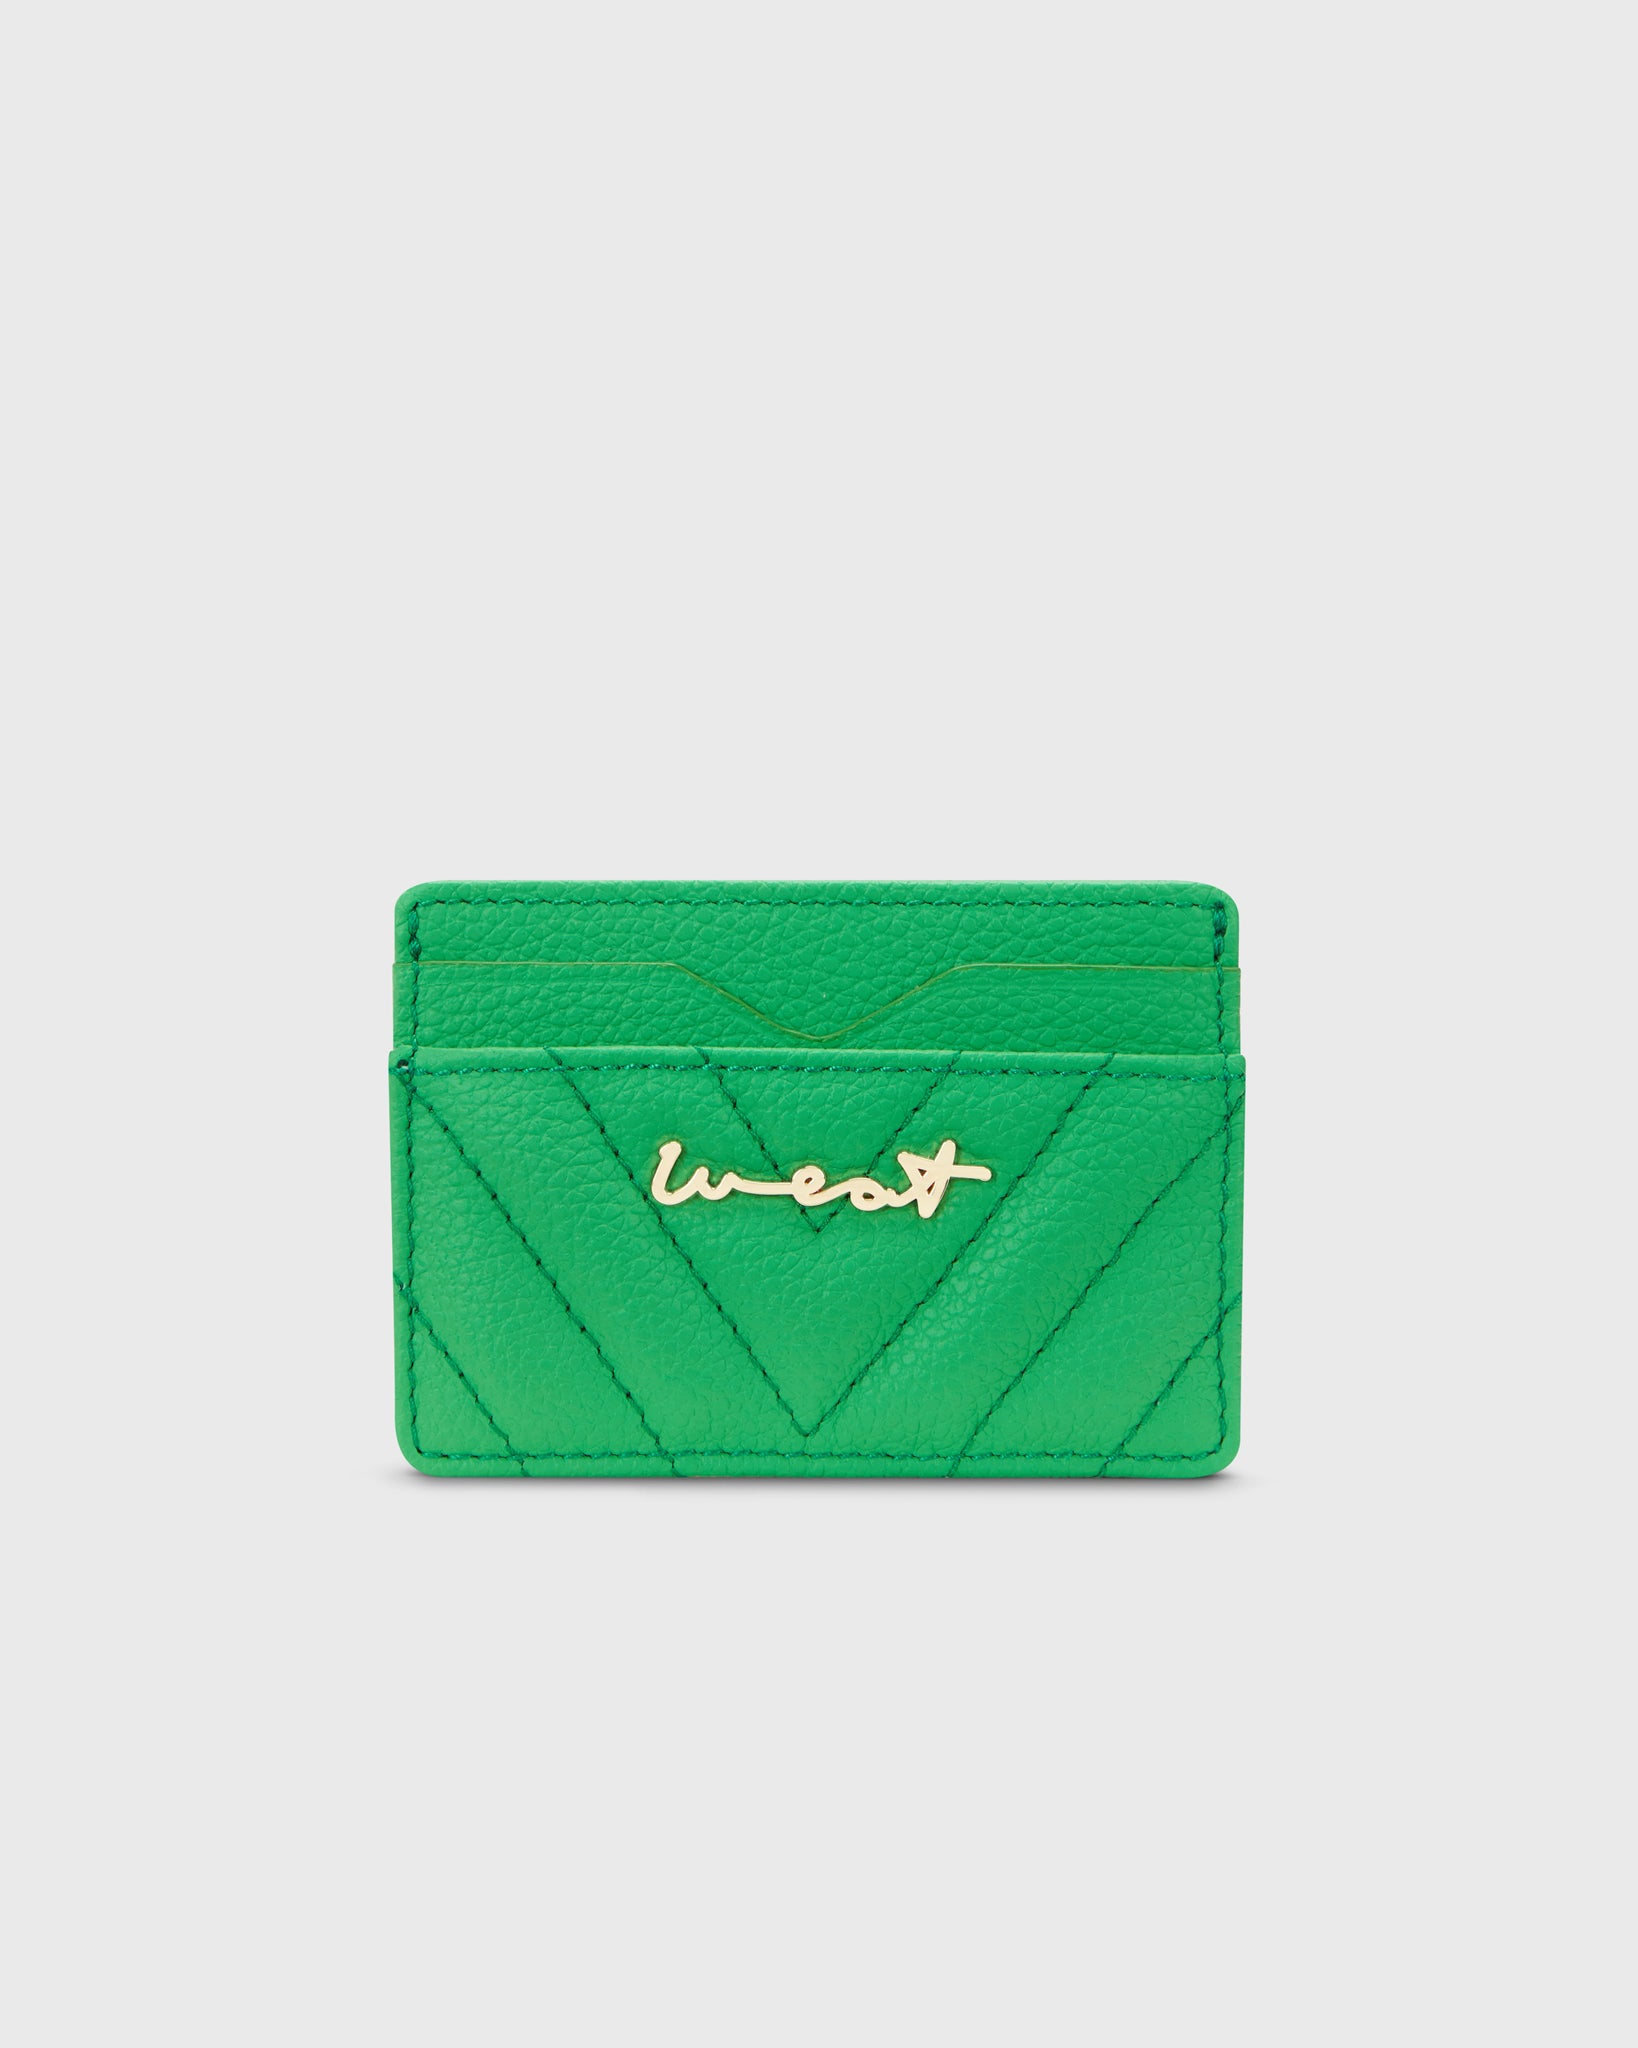 Saint Laurent Ysl Monogram Card Holder in Green